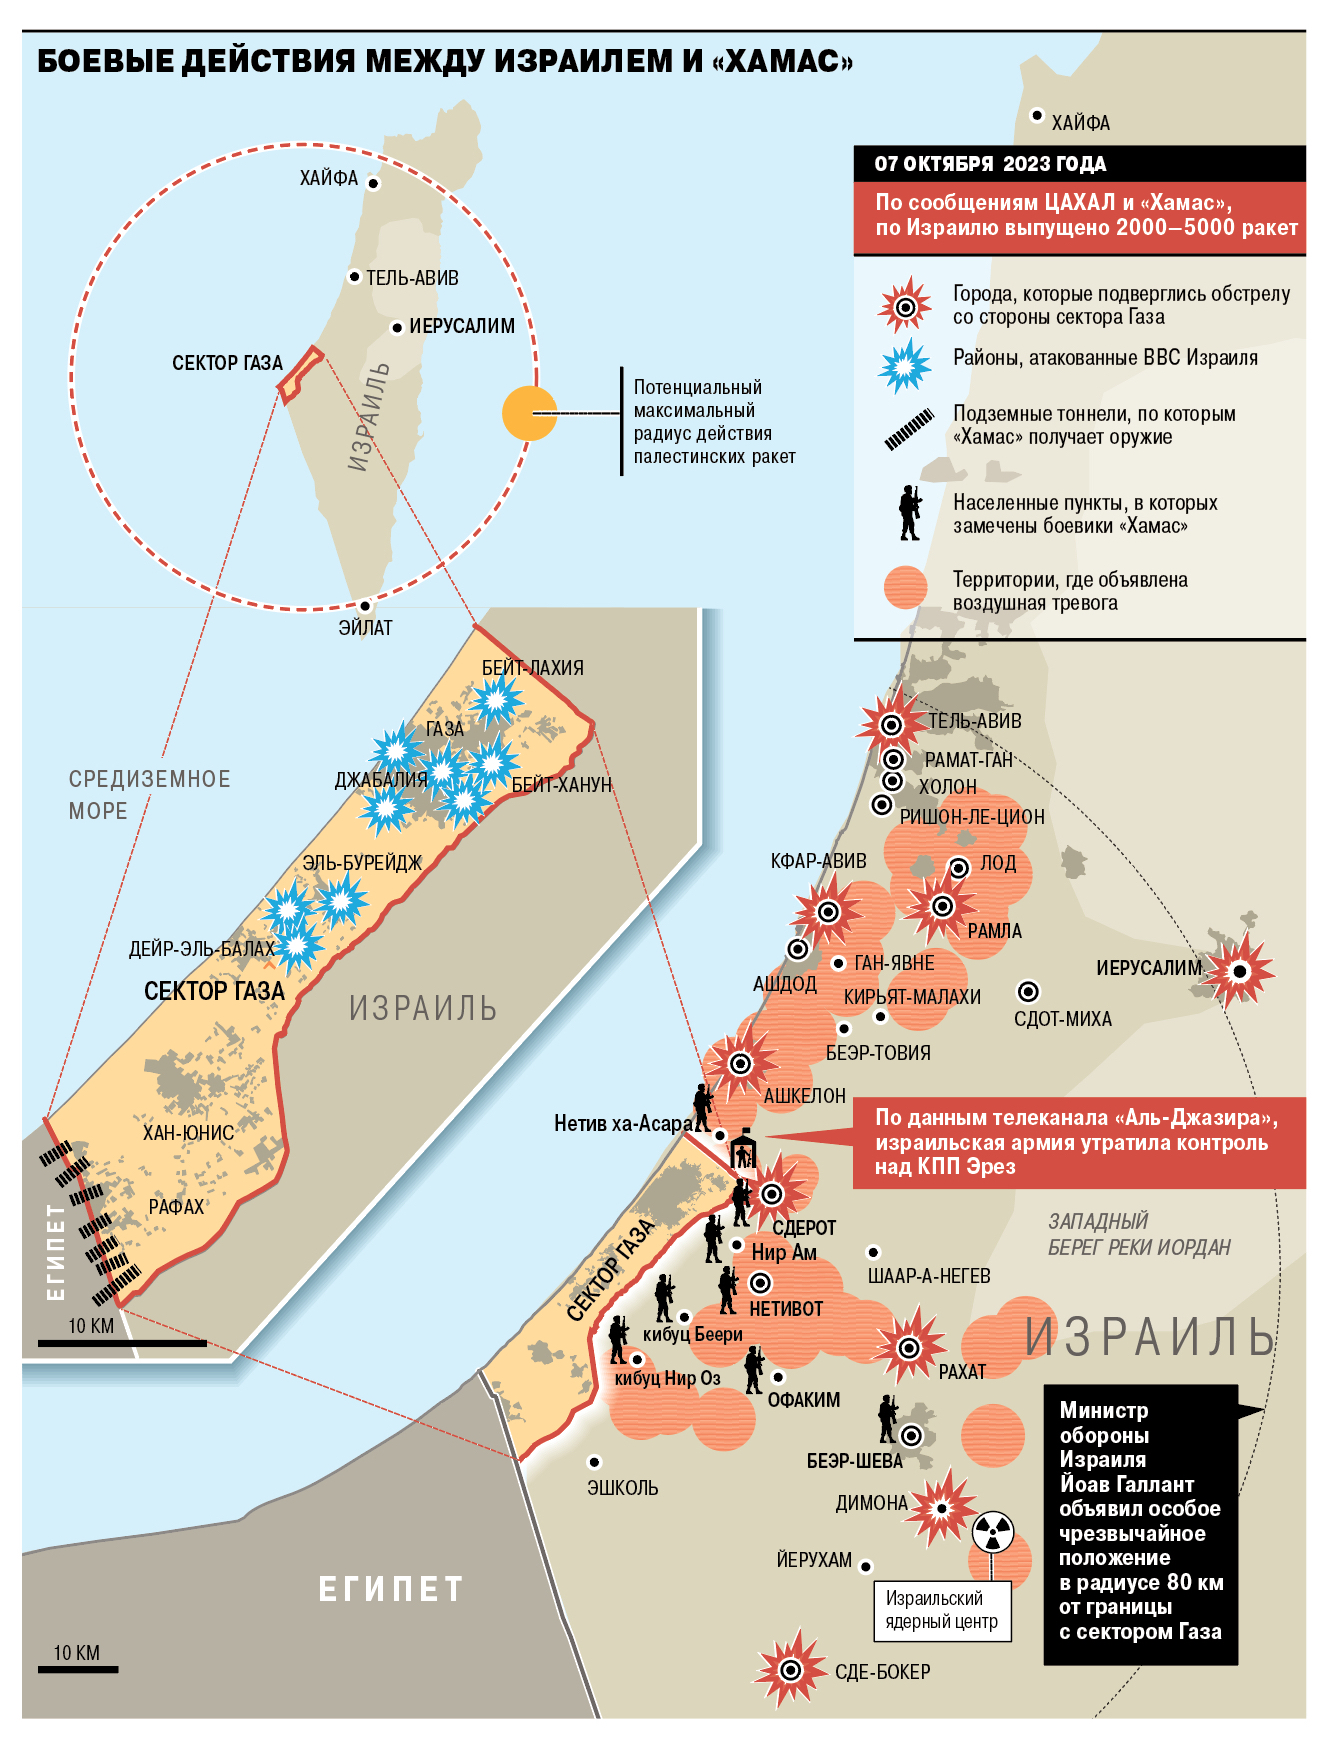 Что происходит в Израиле. Главное и карта - Коммерсантъ